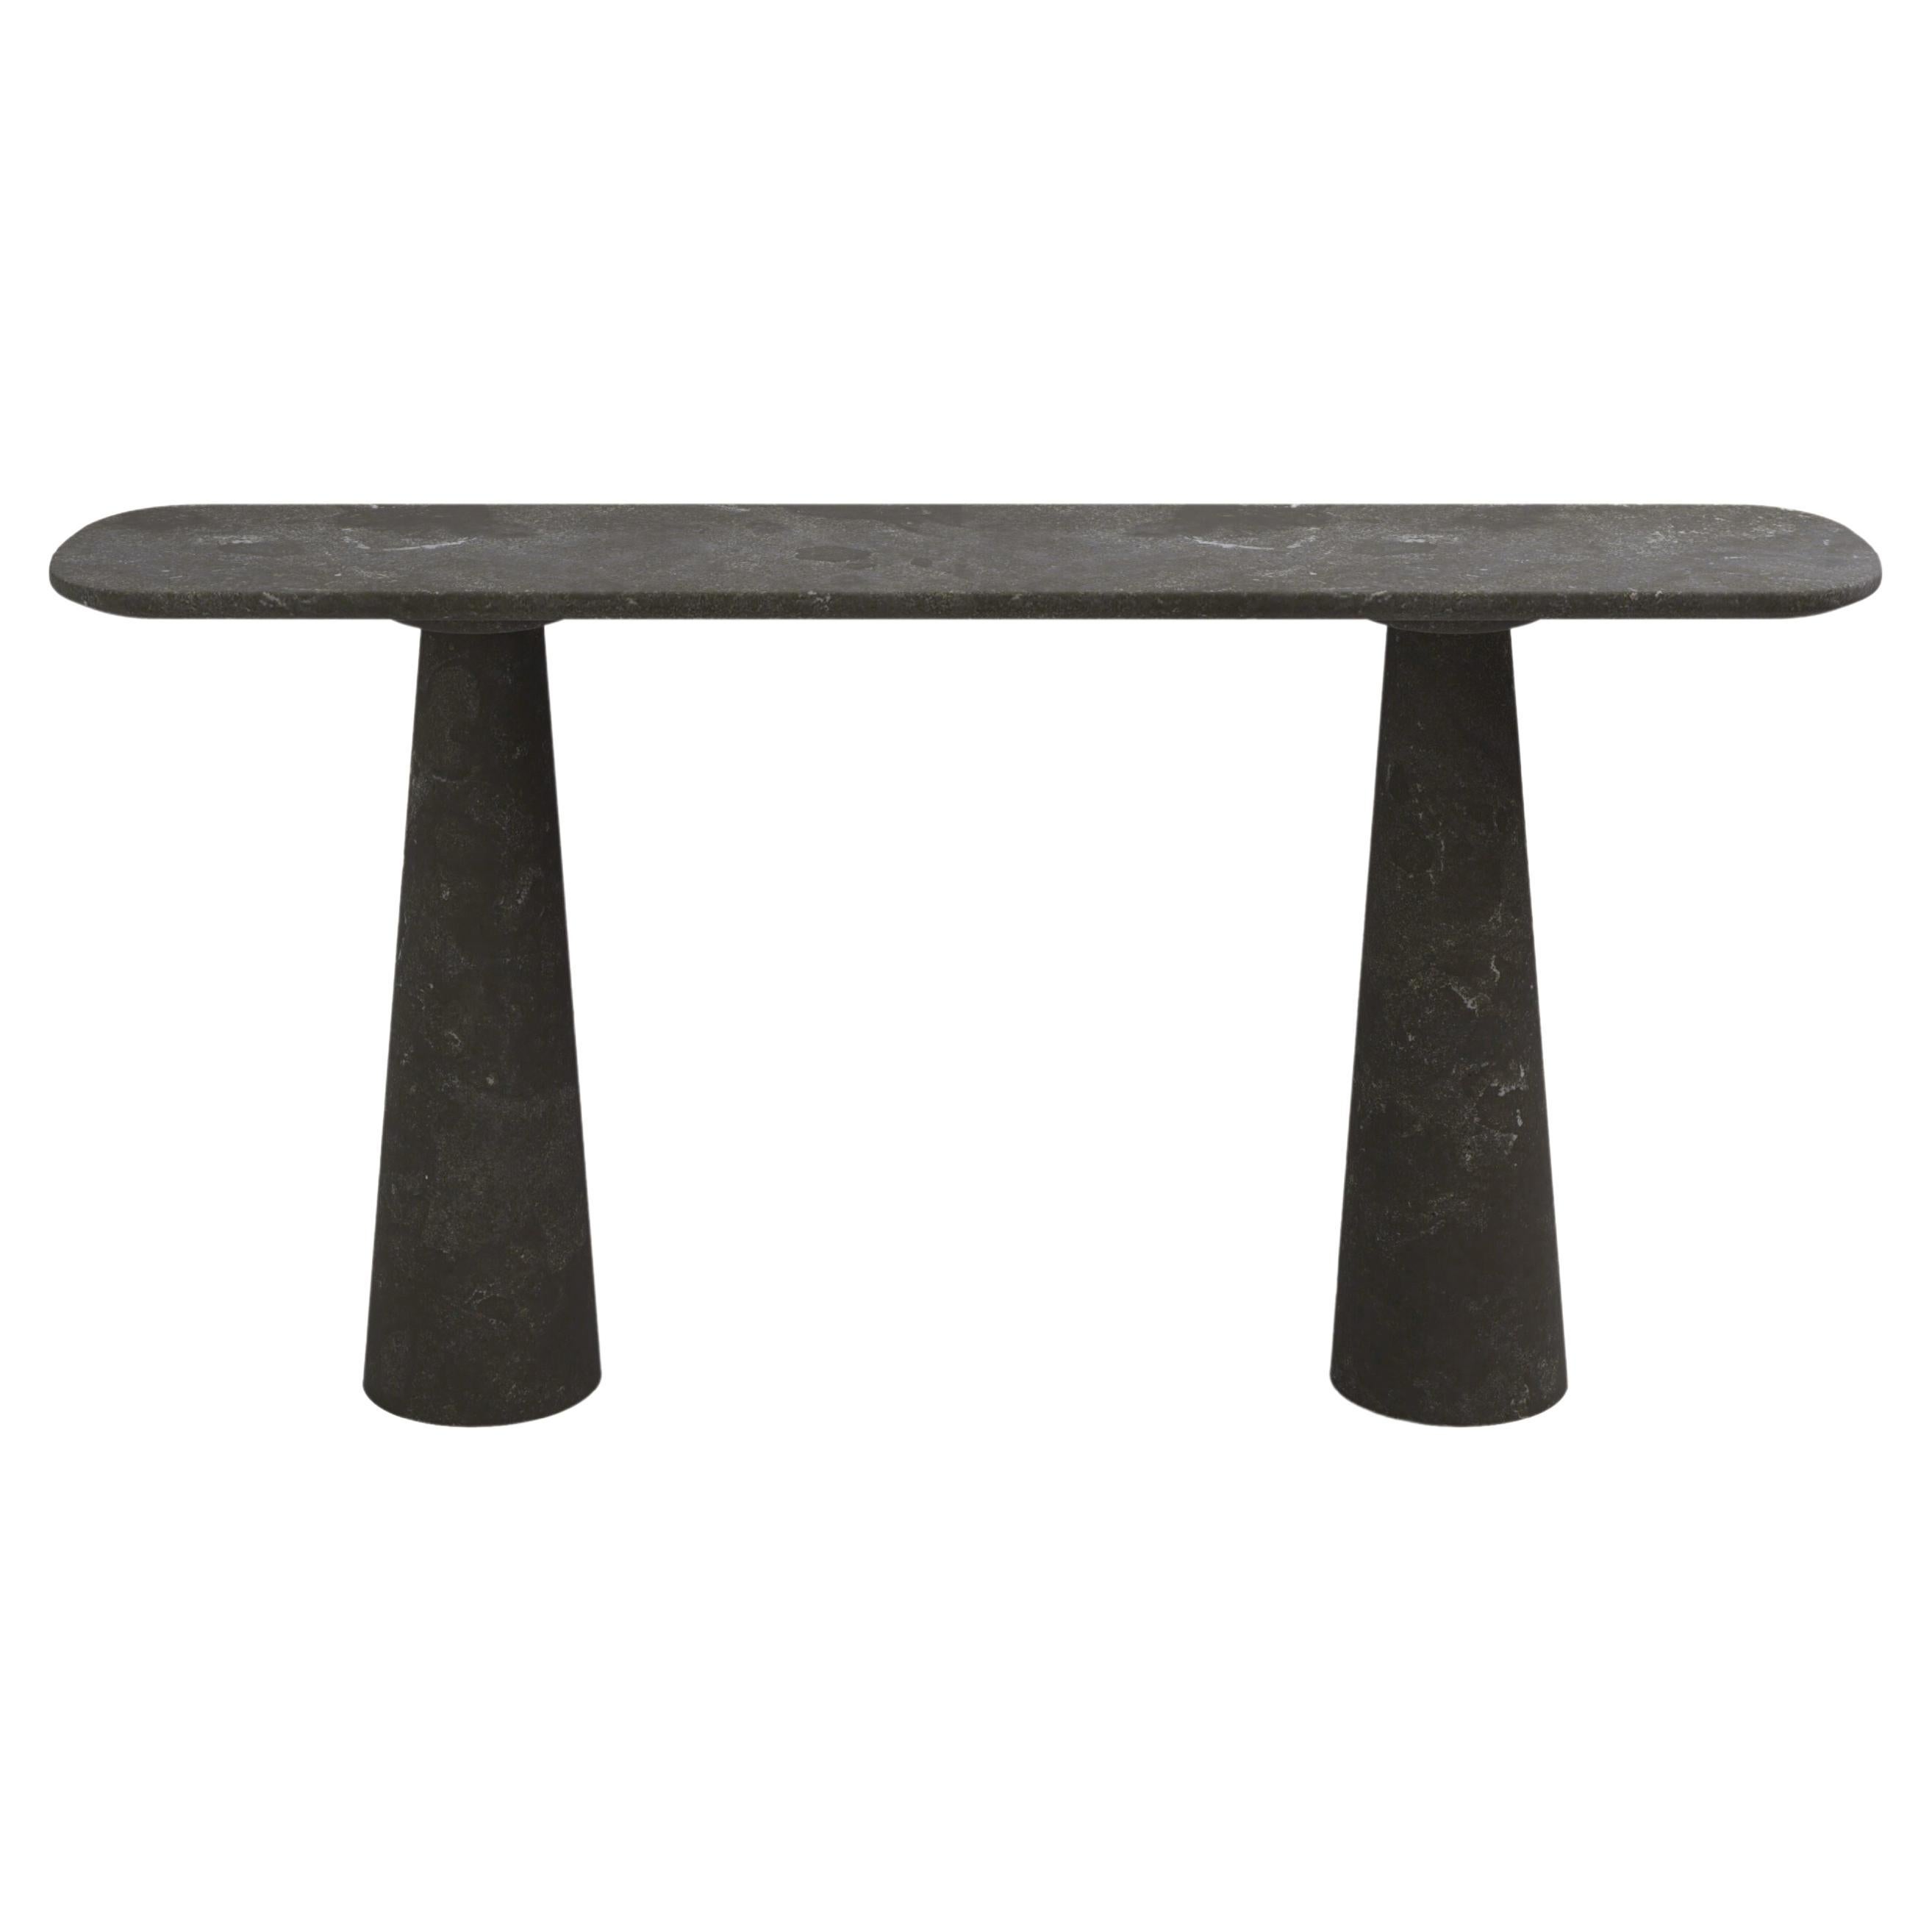 FORM(LA) Cono Console Table 60”L x 15”W x 33”H Nero Petite Granite For Sale